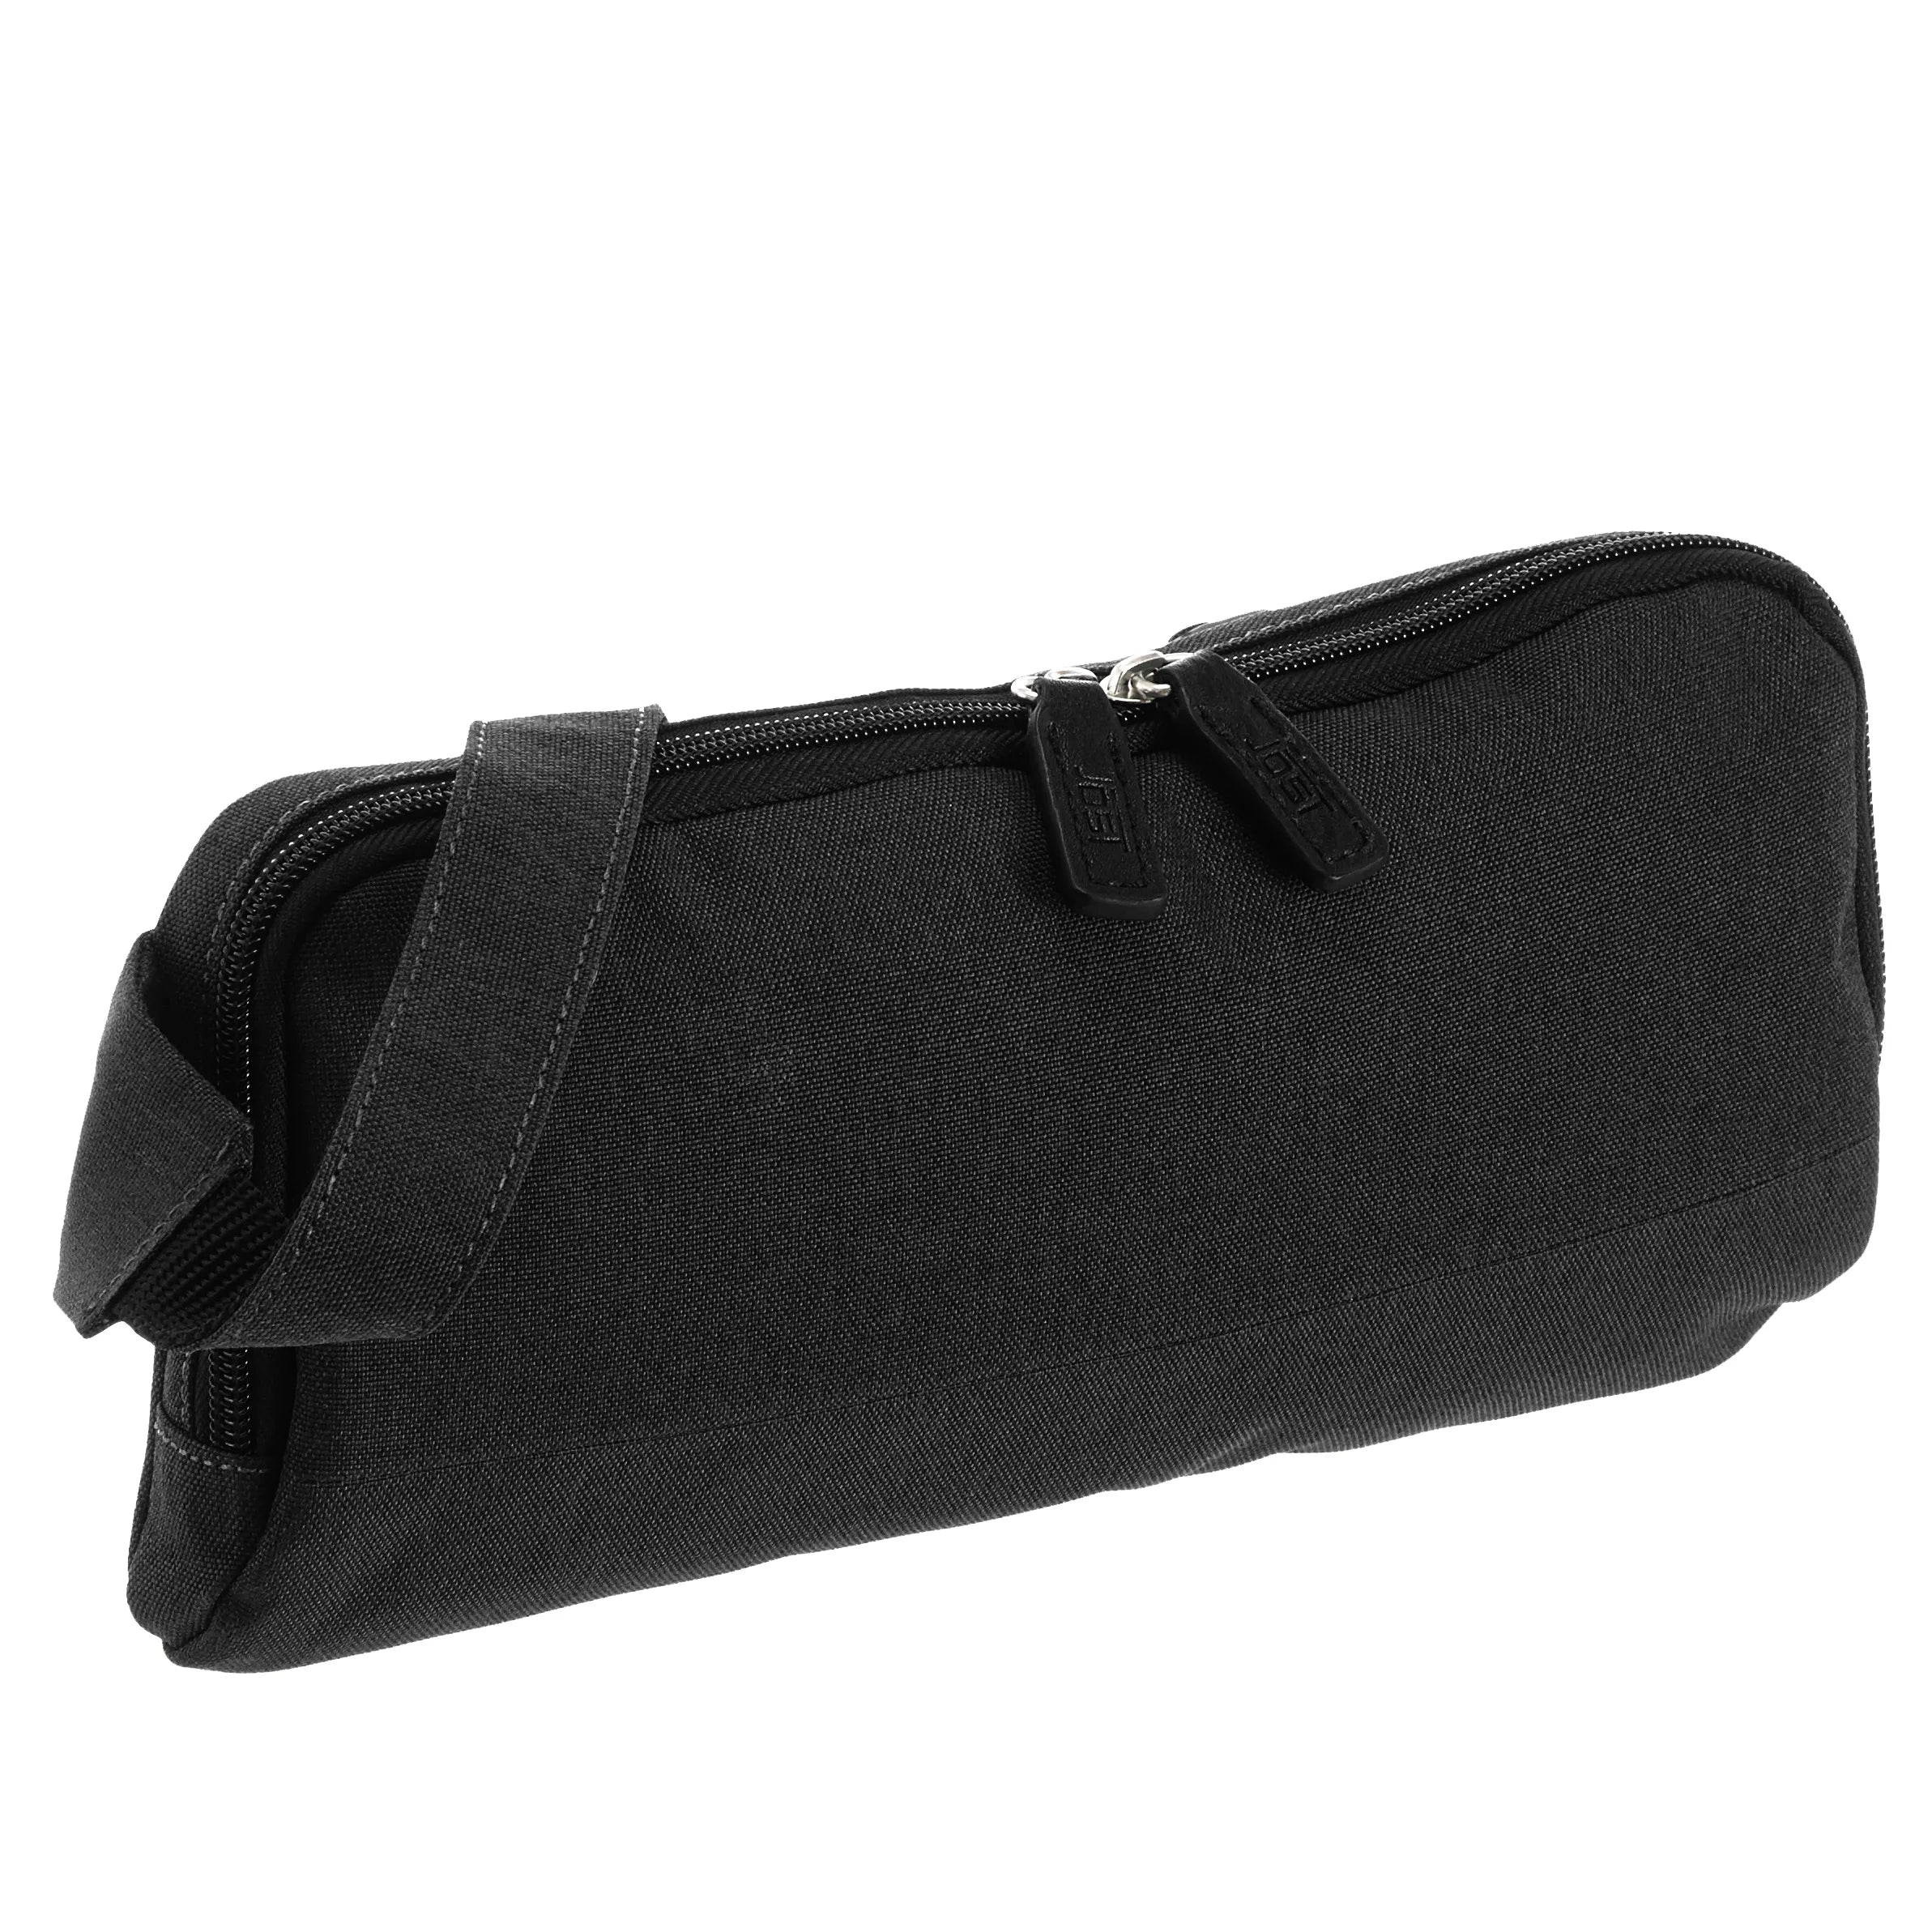 Jost Bergen Crossover Bag 28 cm - schwarz